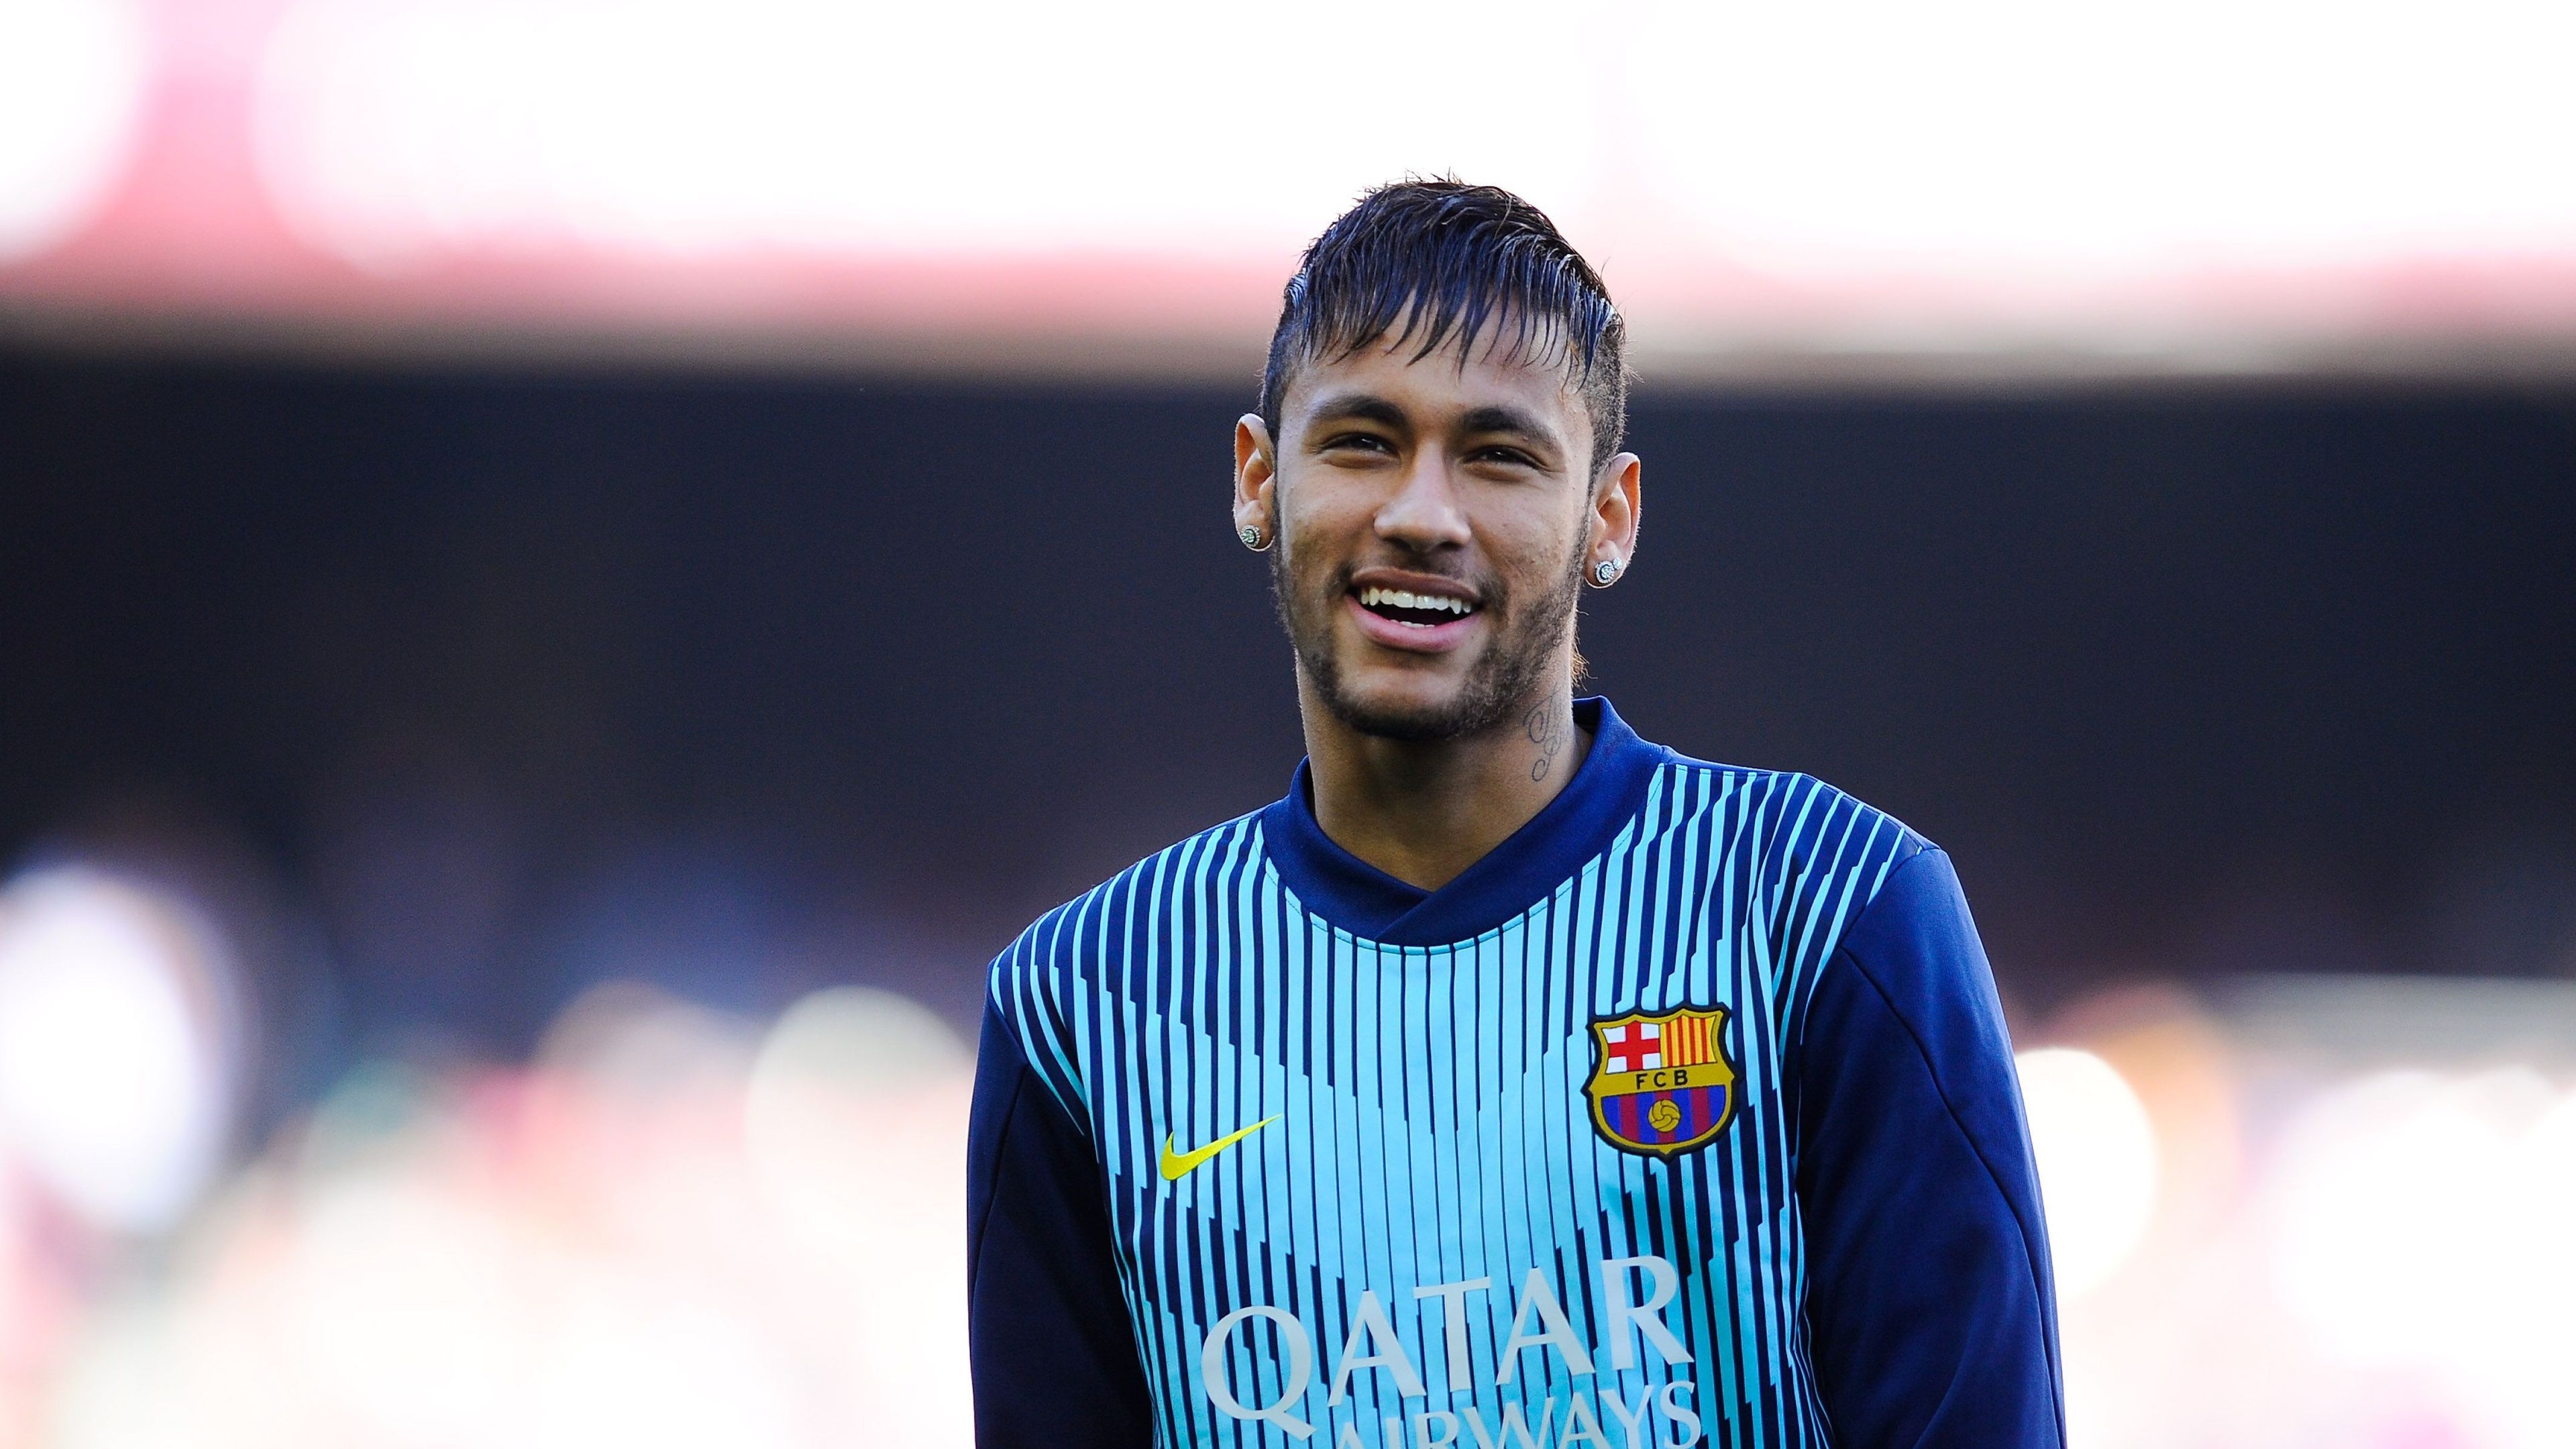 Neymar Training for 3840 x 2160 Ultra HD resolution